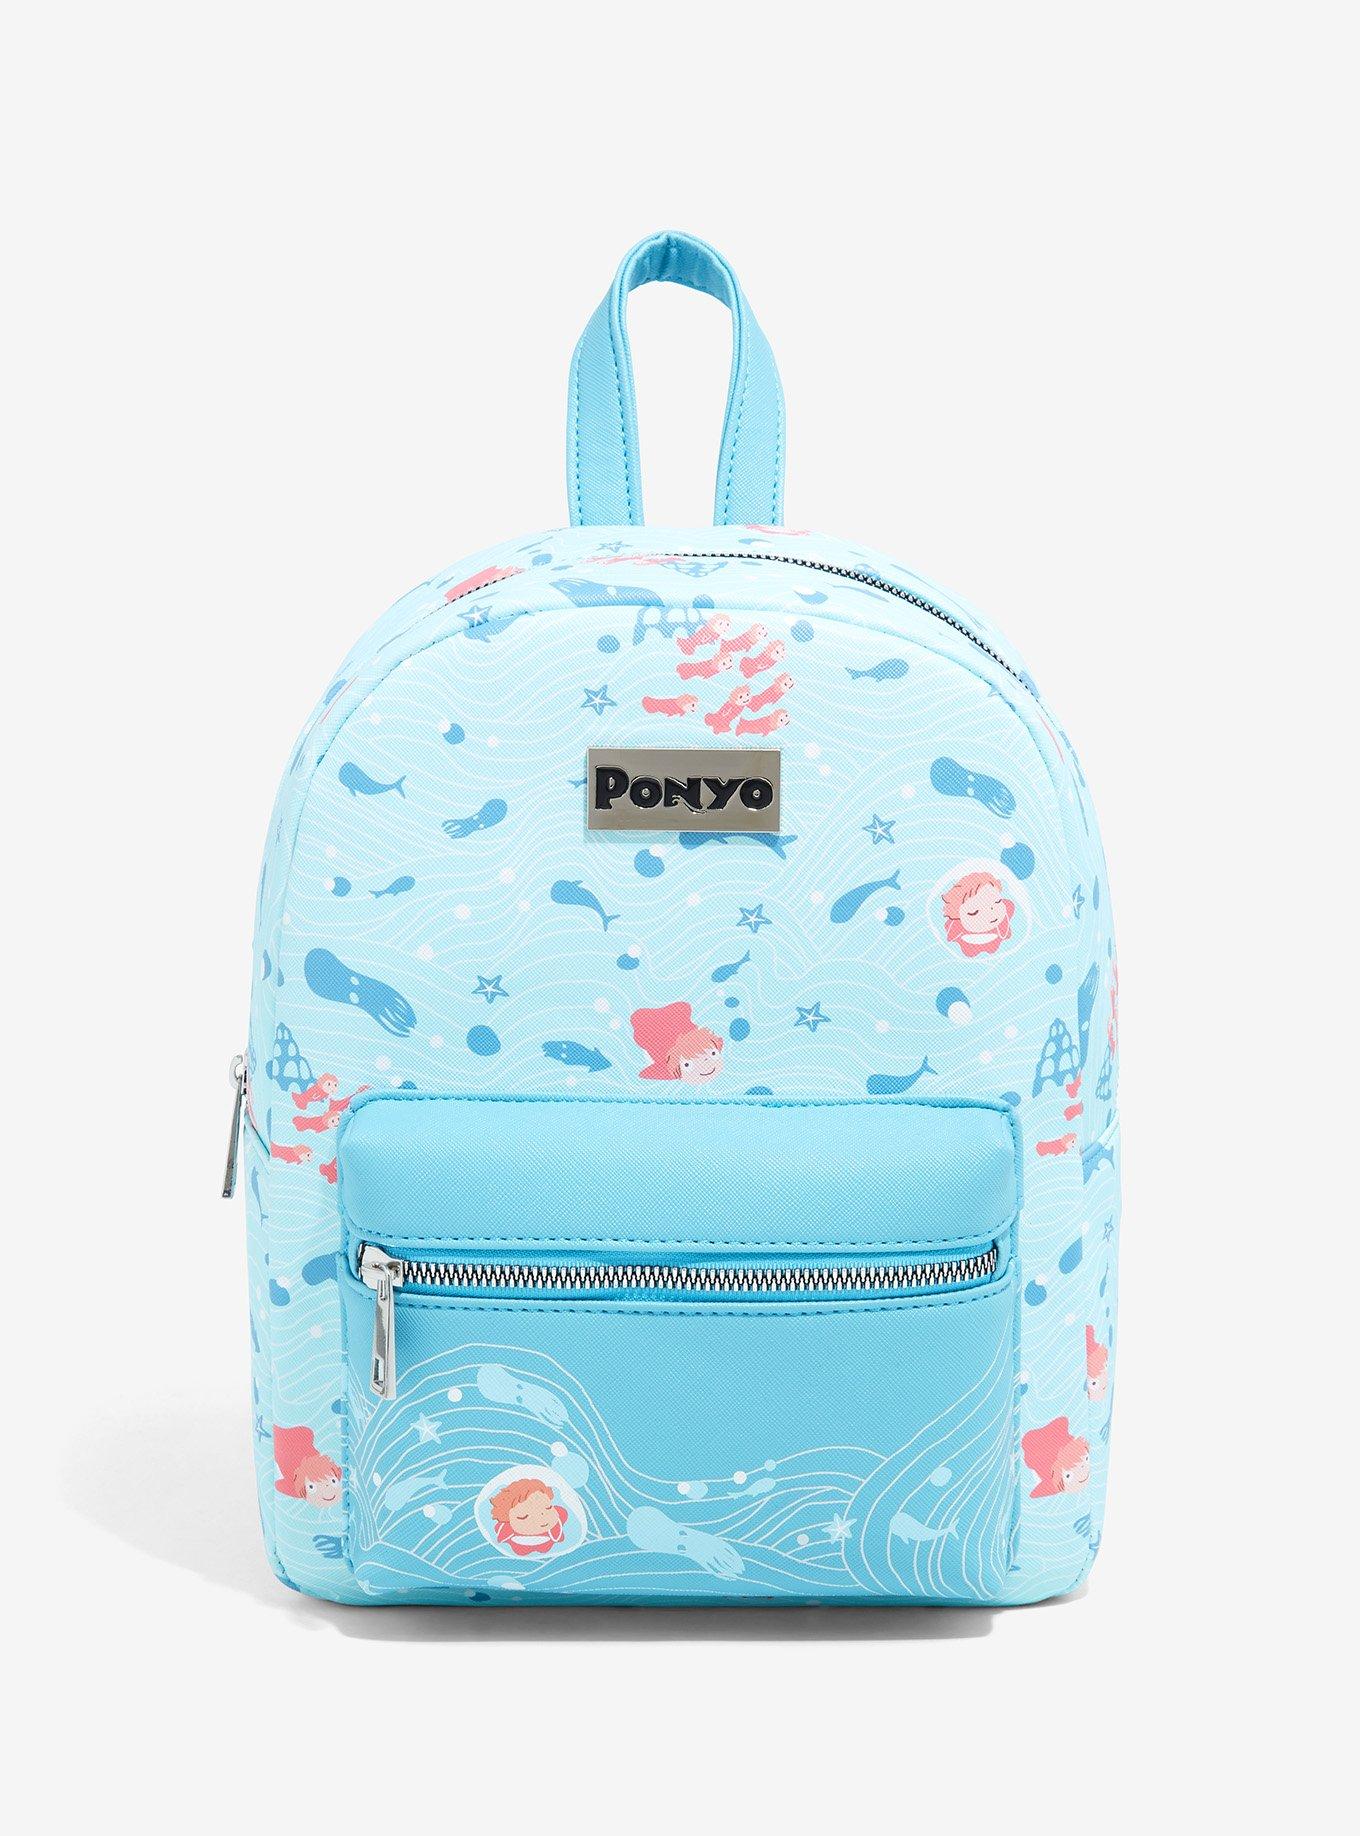 Studio Ghibli Ponyo Light Blue Mini Backpack | Hot Topic